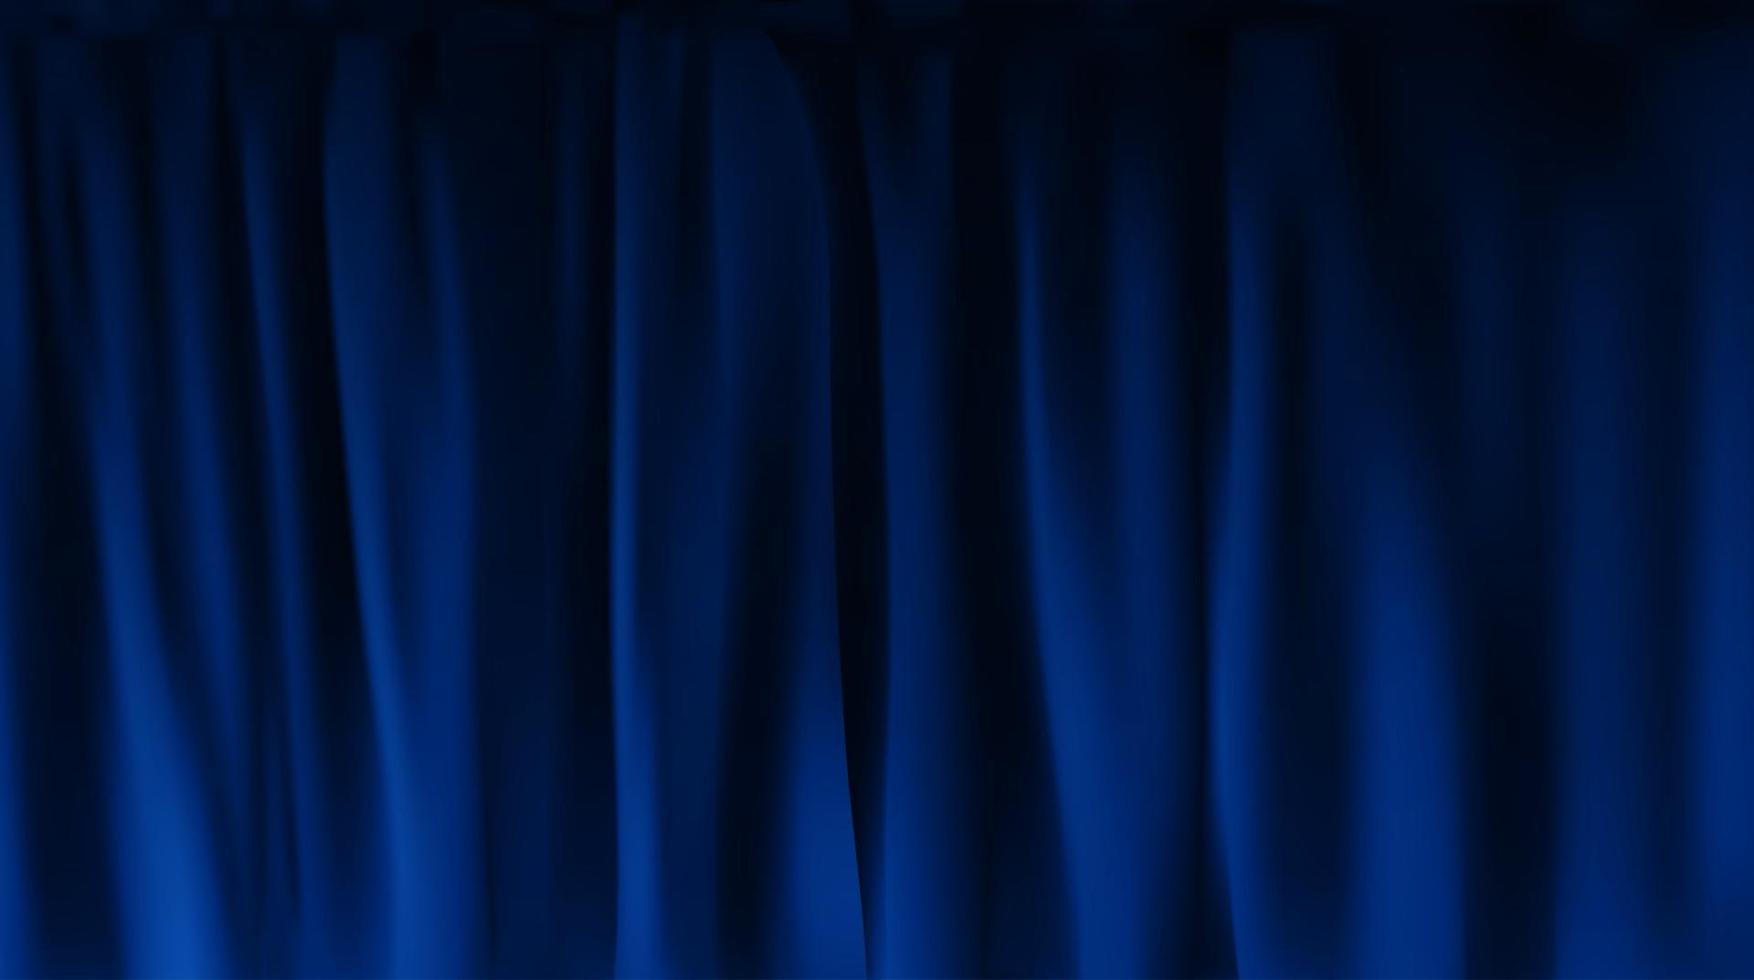 cortina de veludo azul colorido realista dobrada vetor